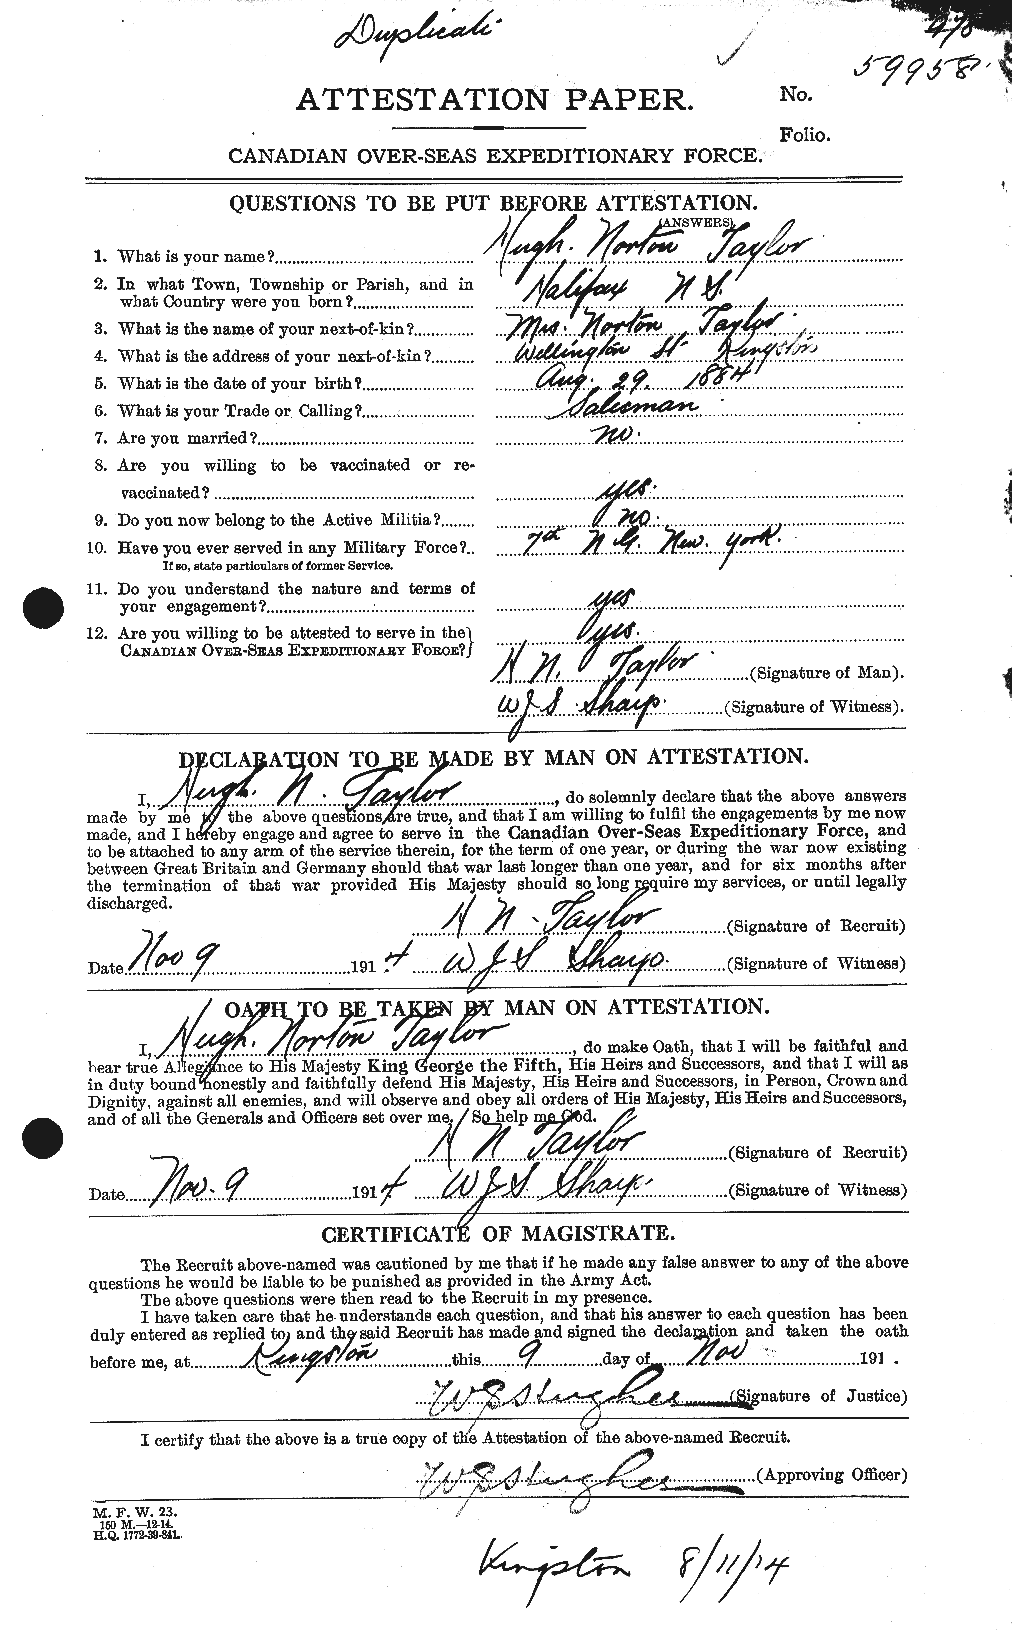 Dossiers du Personnel de la Première Guerre mondiale - CEC 626620a